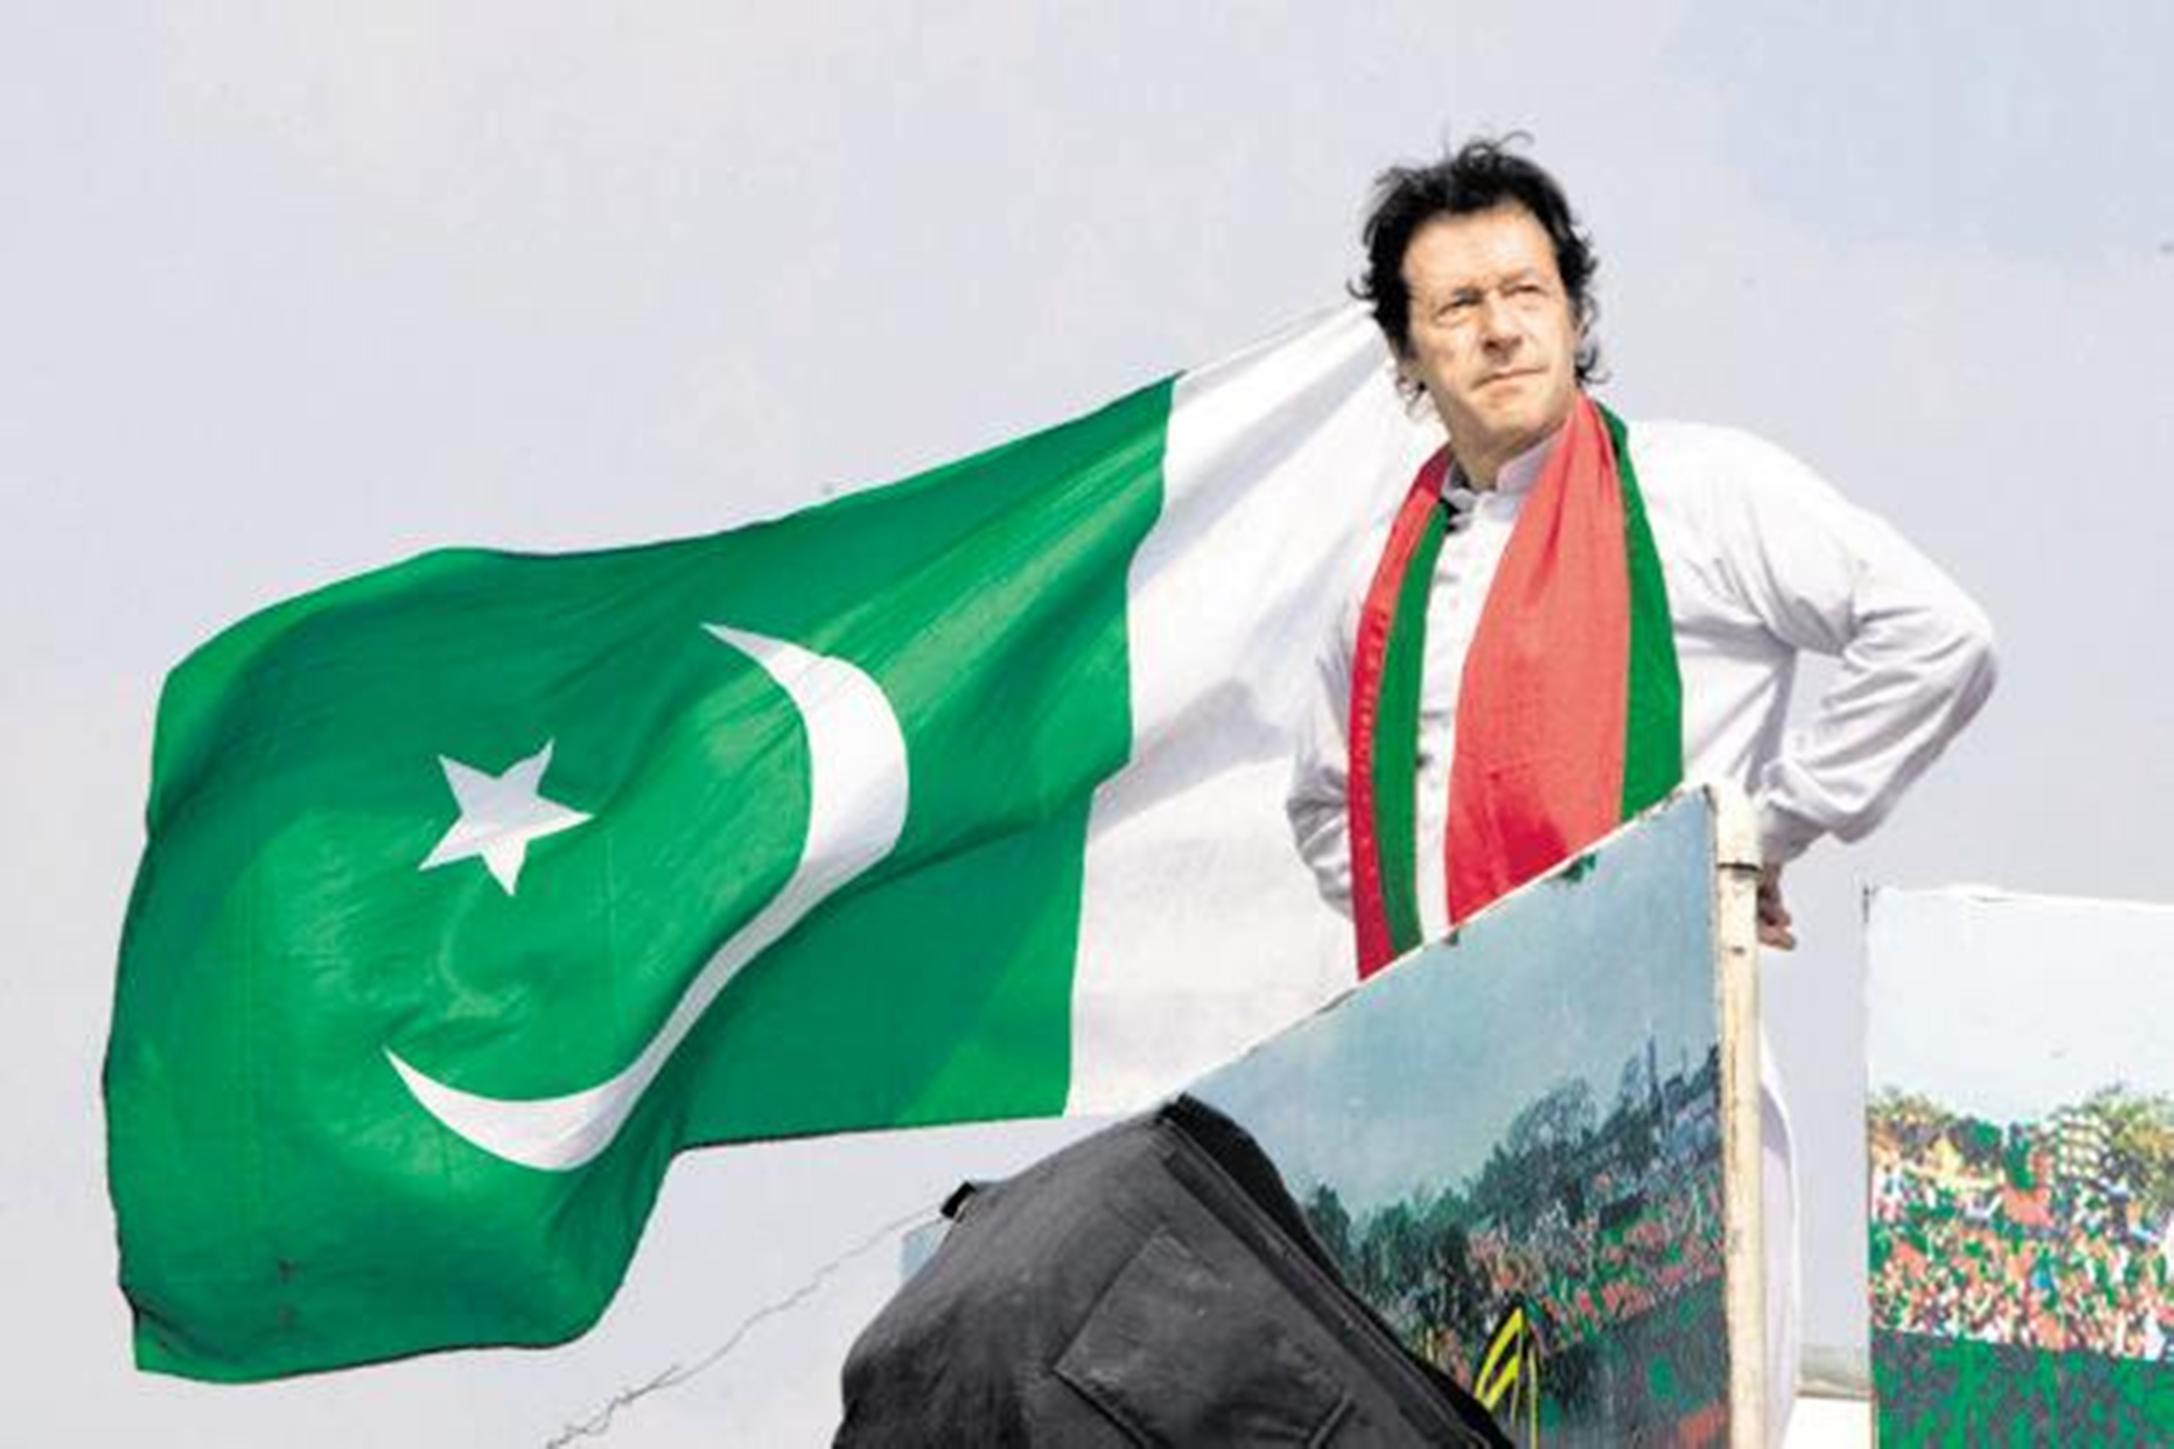 السياسة الخارجية الباكستانية في زمن "عمران خان"...متطلبات الداخل وتحديات الخارج